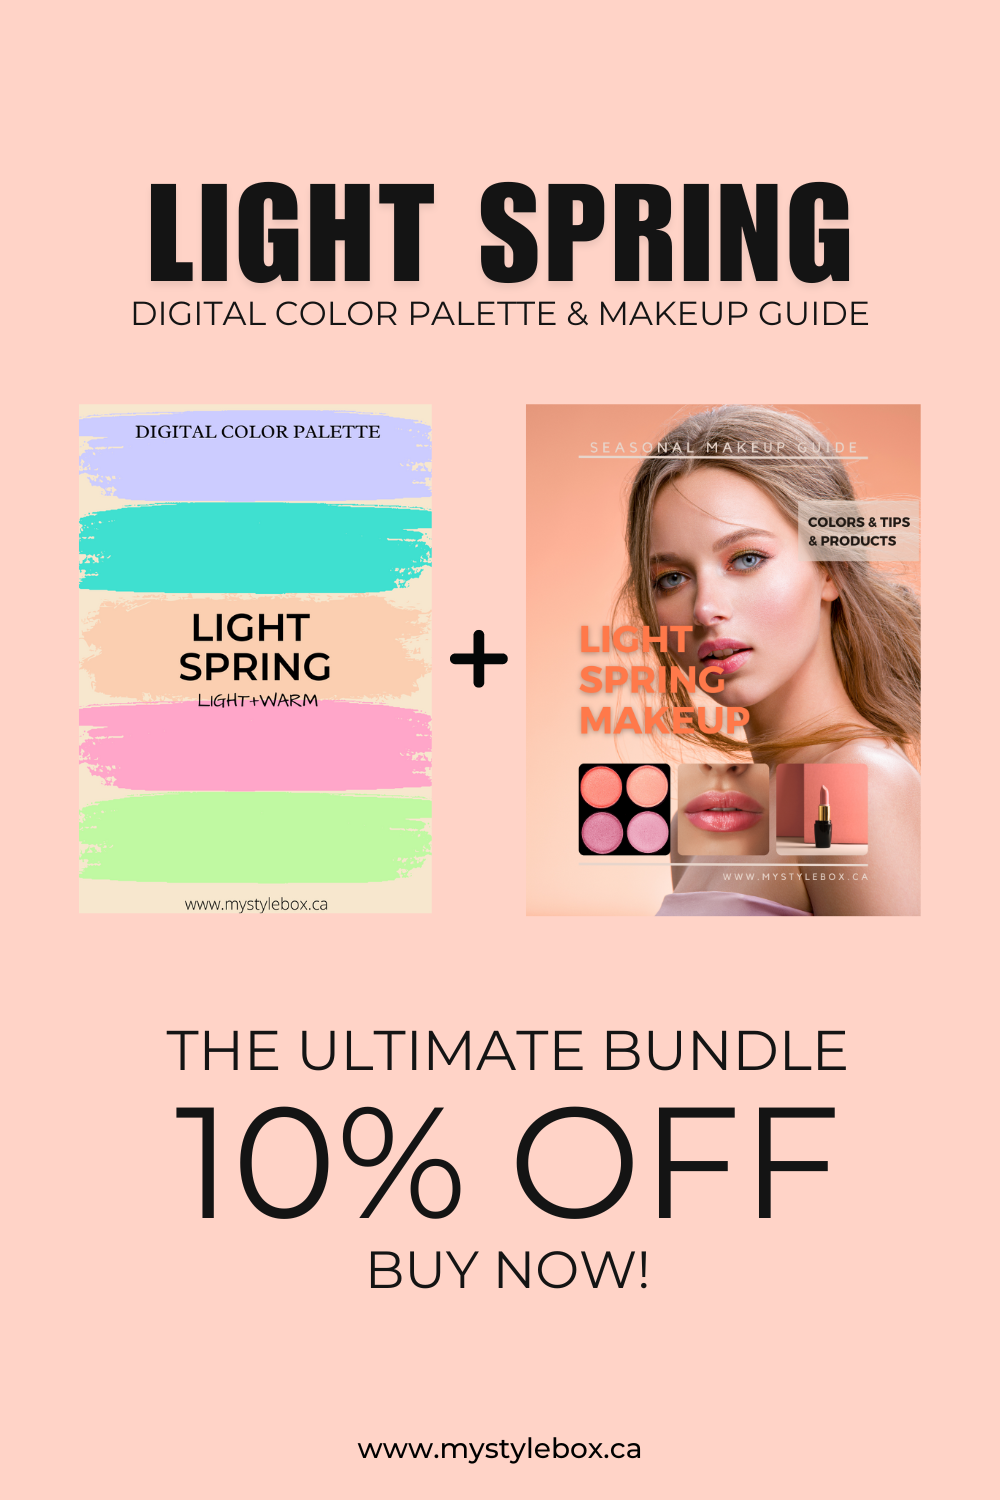 Light Spring Digital Color Palette and Makeup Guide